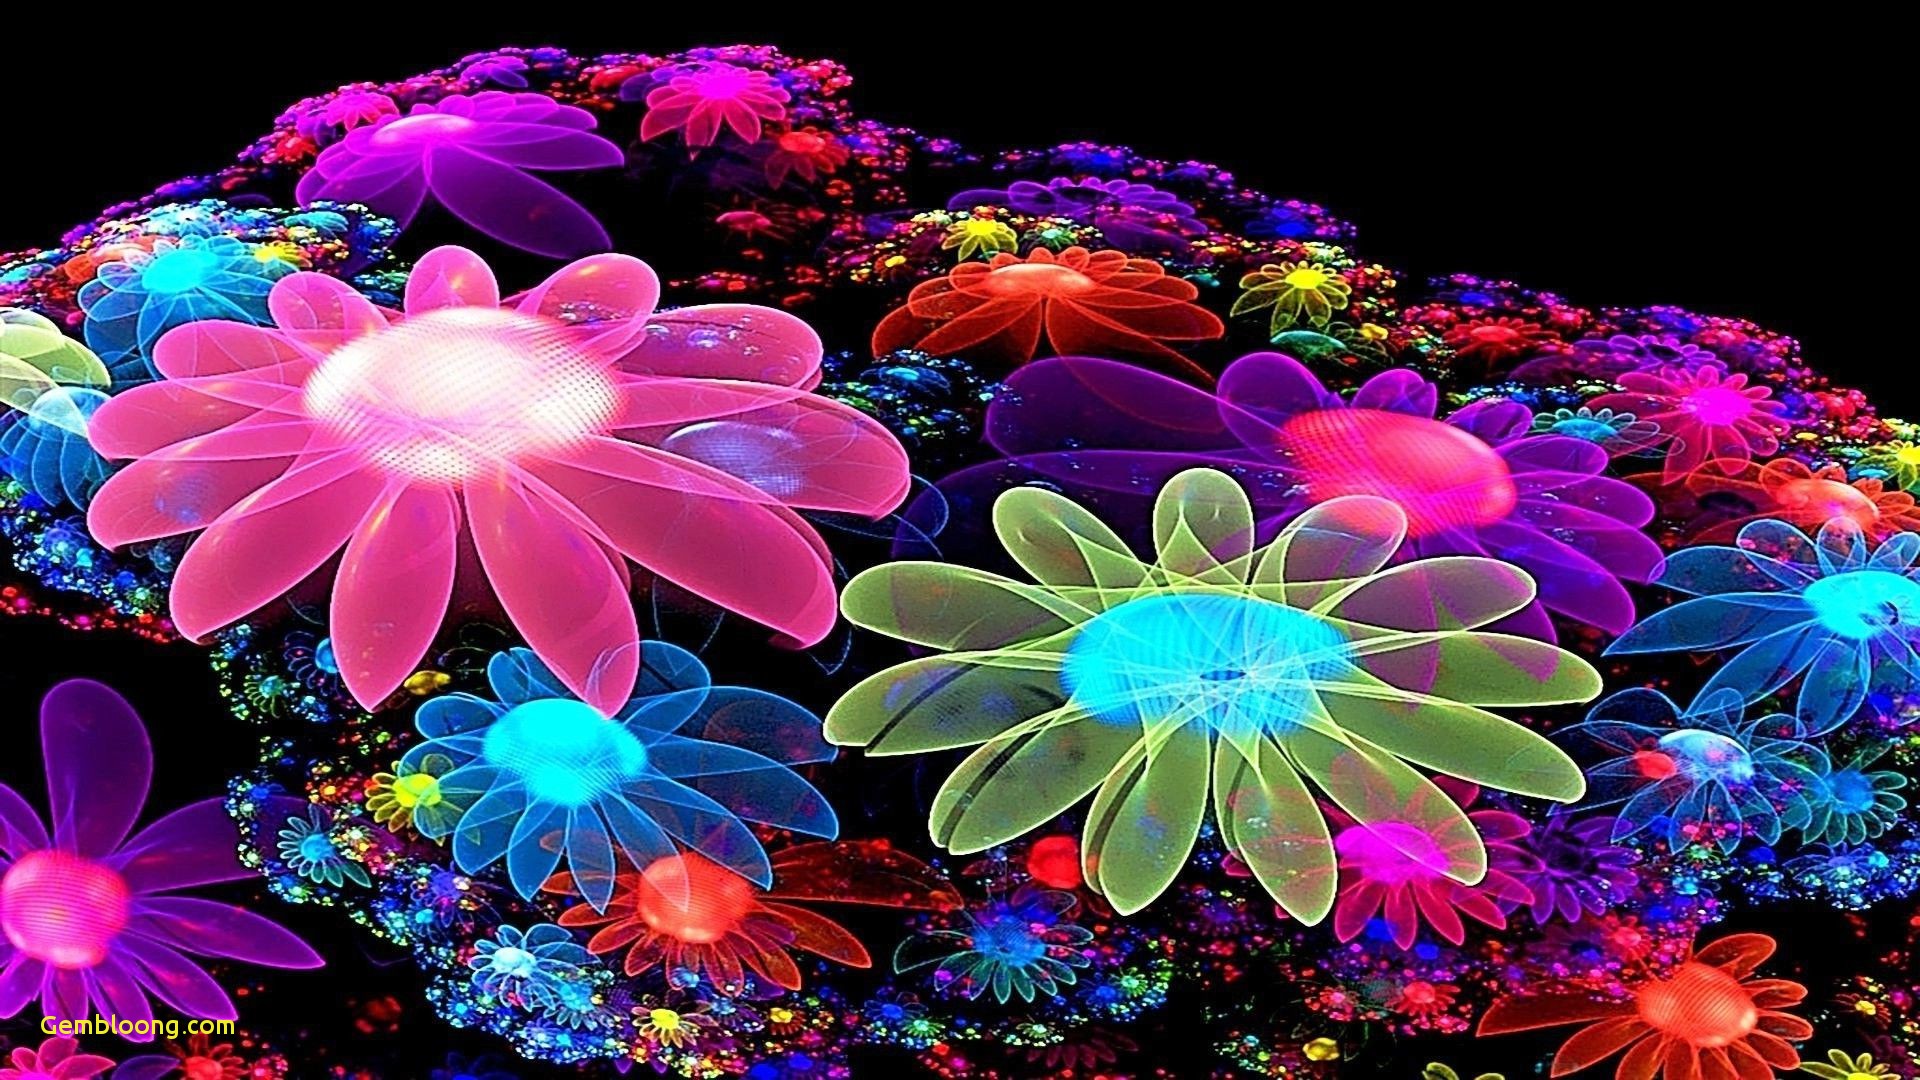 Với hình hoa 3D, bạn sẽ được thưởng thức một thế giới hoa tươi sáng, đầy màu sắc và chân thực. Được xây dựng với công nghệ tiên tiến, hình ảnh hoa vẫn như thật, khiến bạn có cảm giác như đang sống trong không gian hoa. Hãy xem ngay hình hoa 3D để trải nghiệm một sự thăng hoa tuyệt vời của màu sắc.